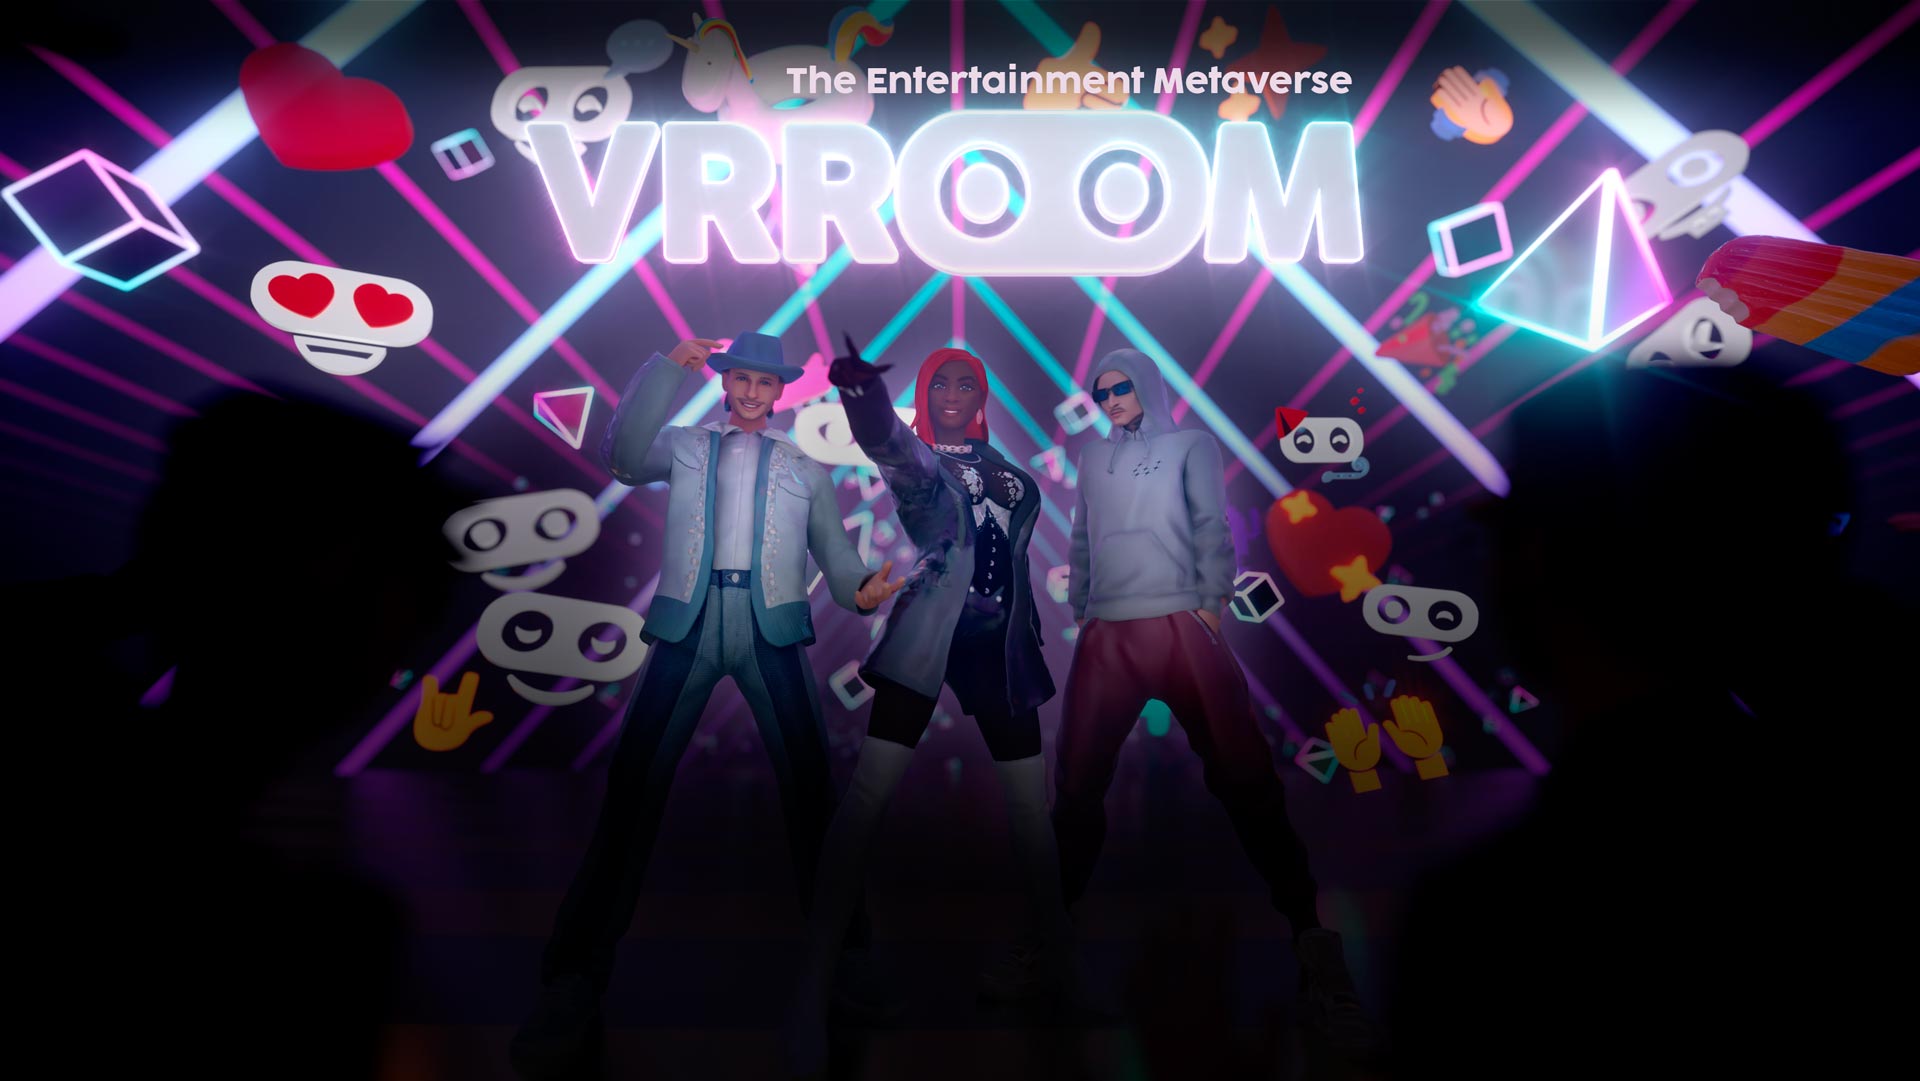 Enjoy an innovative VR concert during the VRROOM Alpha